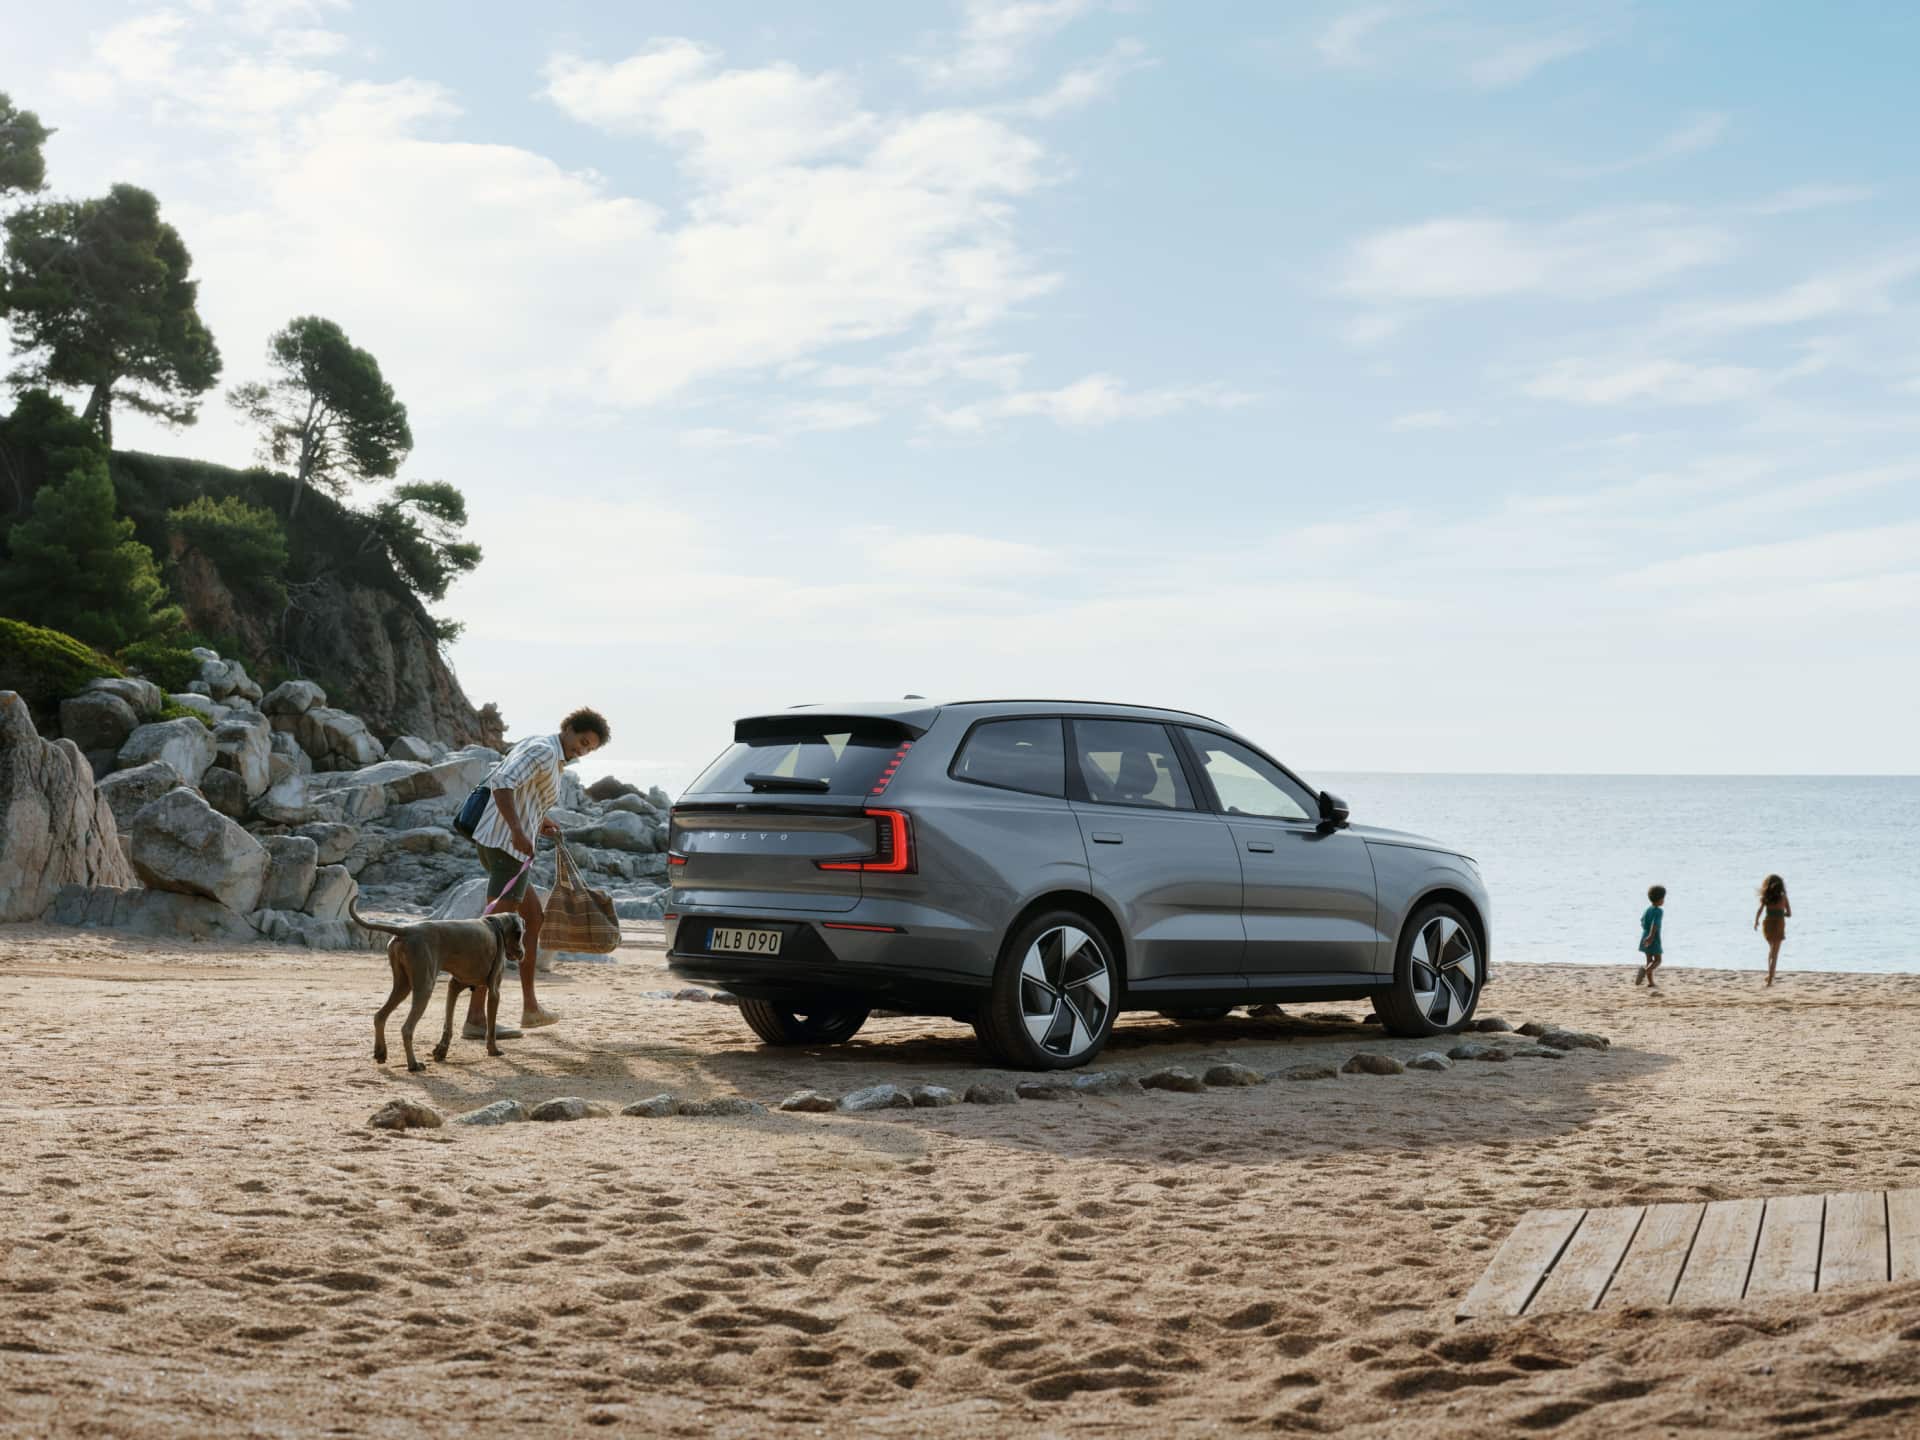 Një imazh që tregon një burrë dhe një qen duke ecur pranë një Volvo EX90 të parkuar në një plazh.